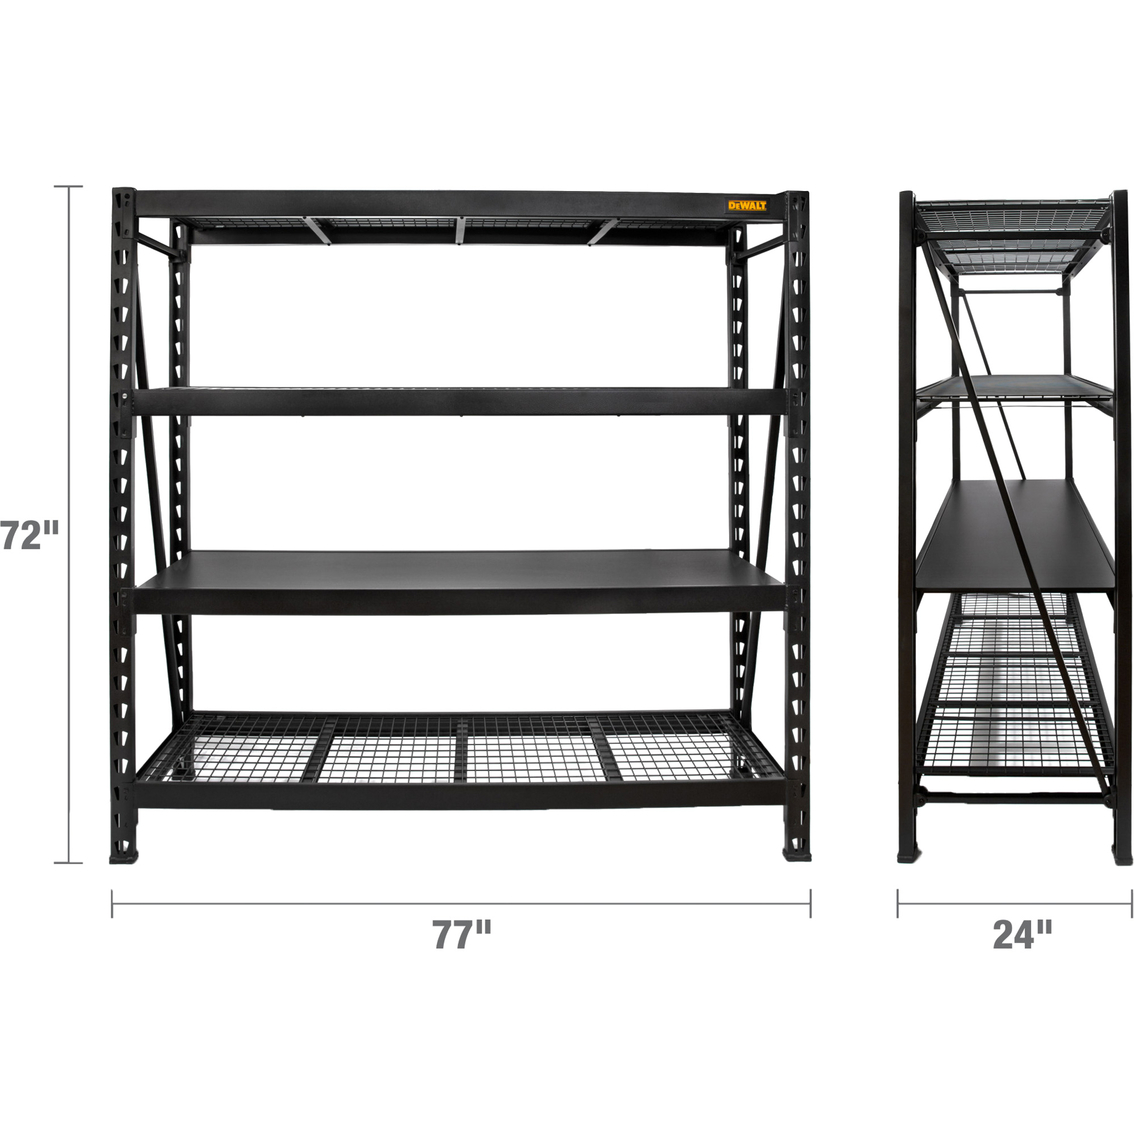 DeWalt 6 ft. Tall Black Frame 4 Shelf Industrial Storage Rack - Image 8 of 8